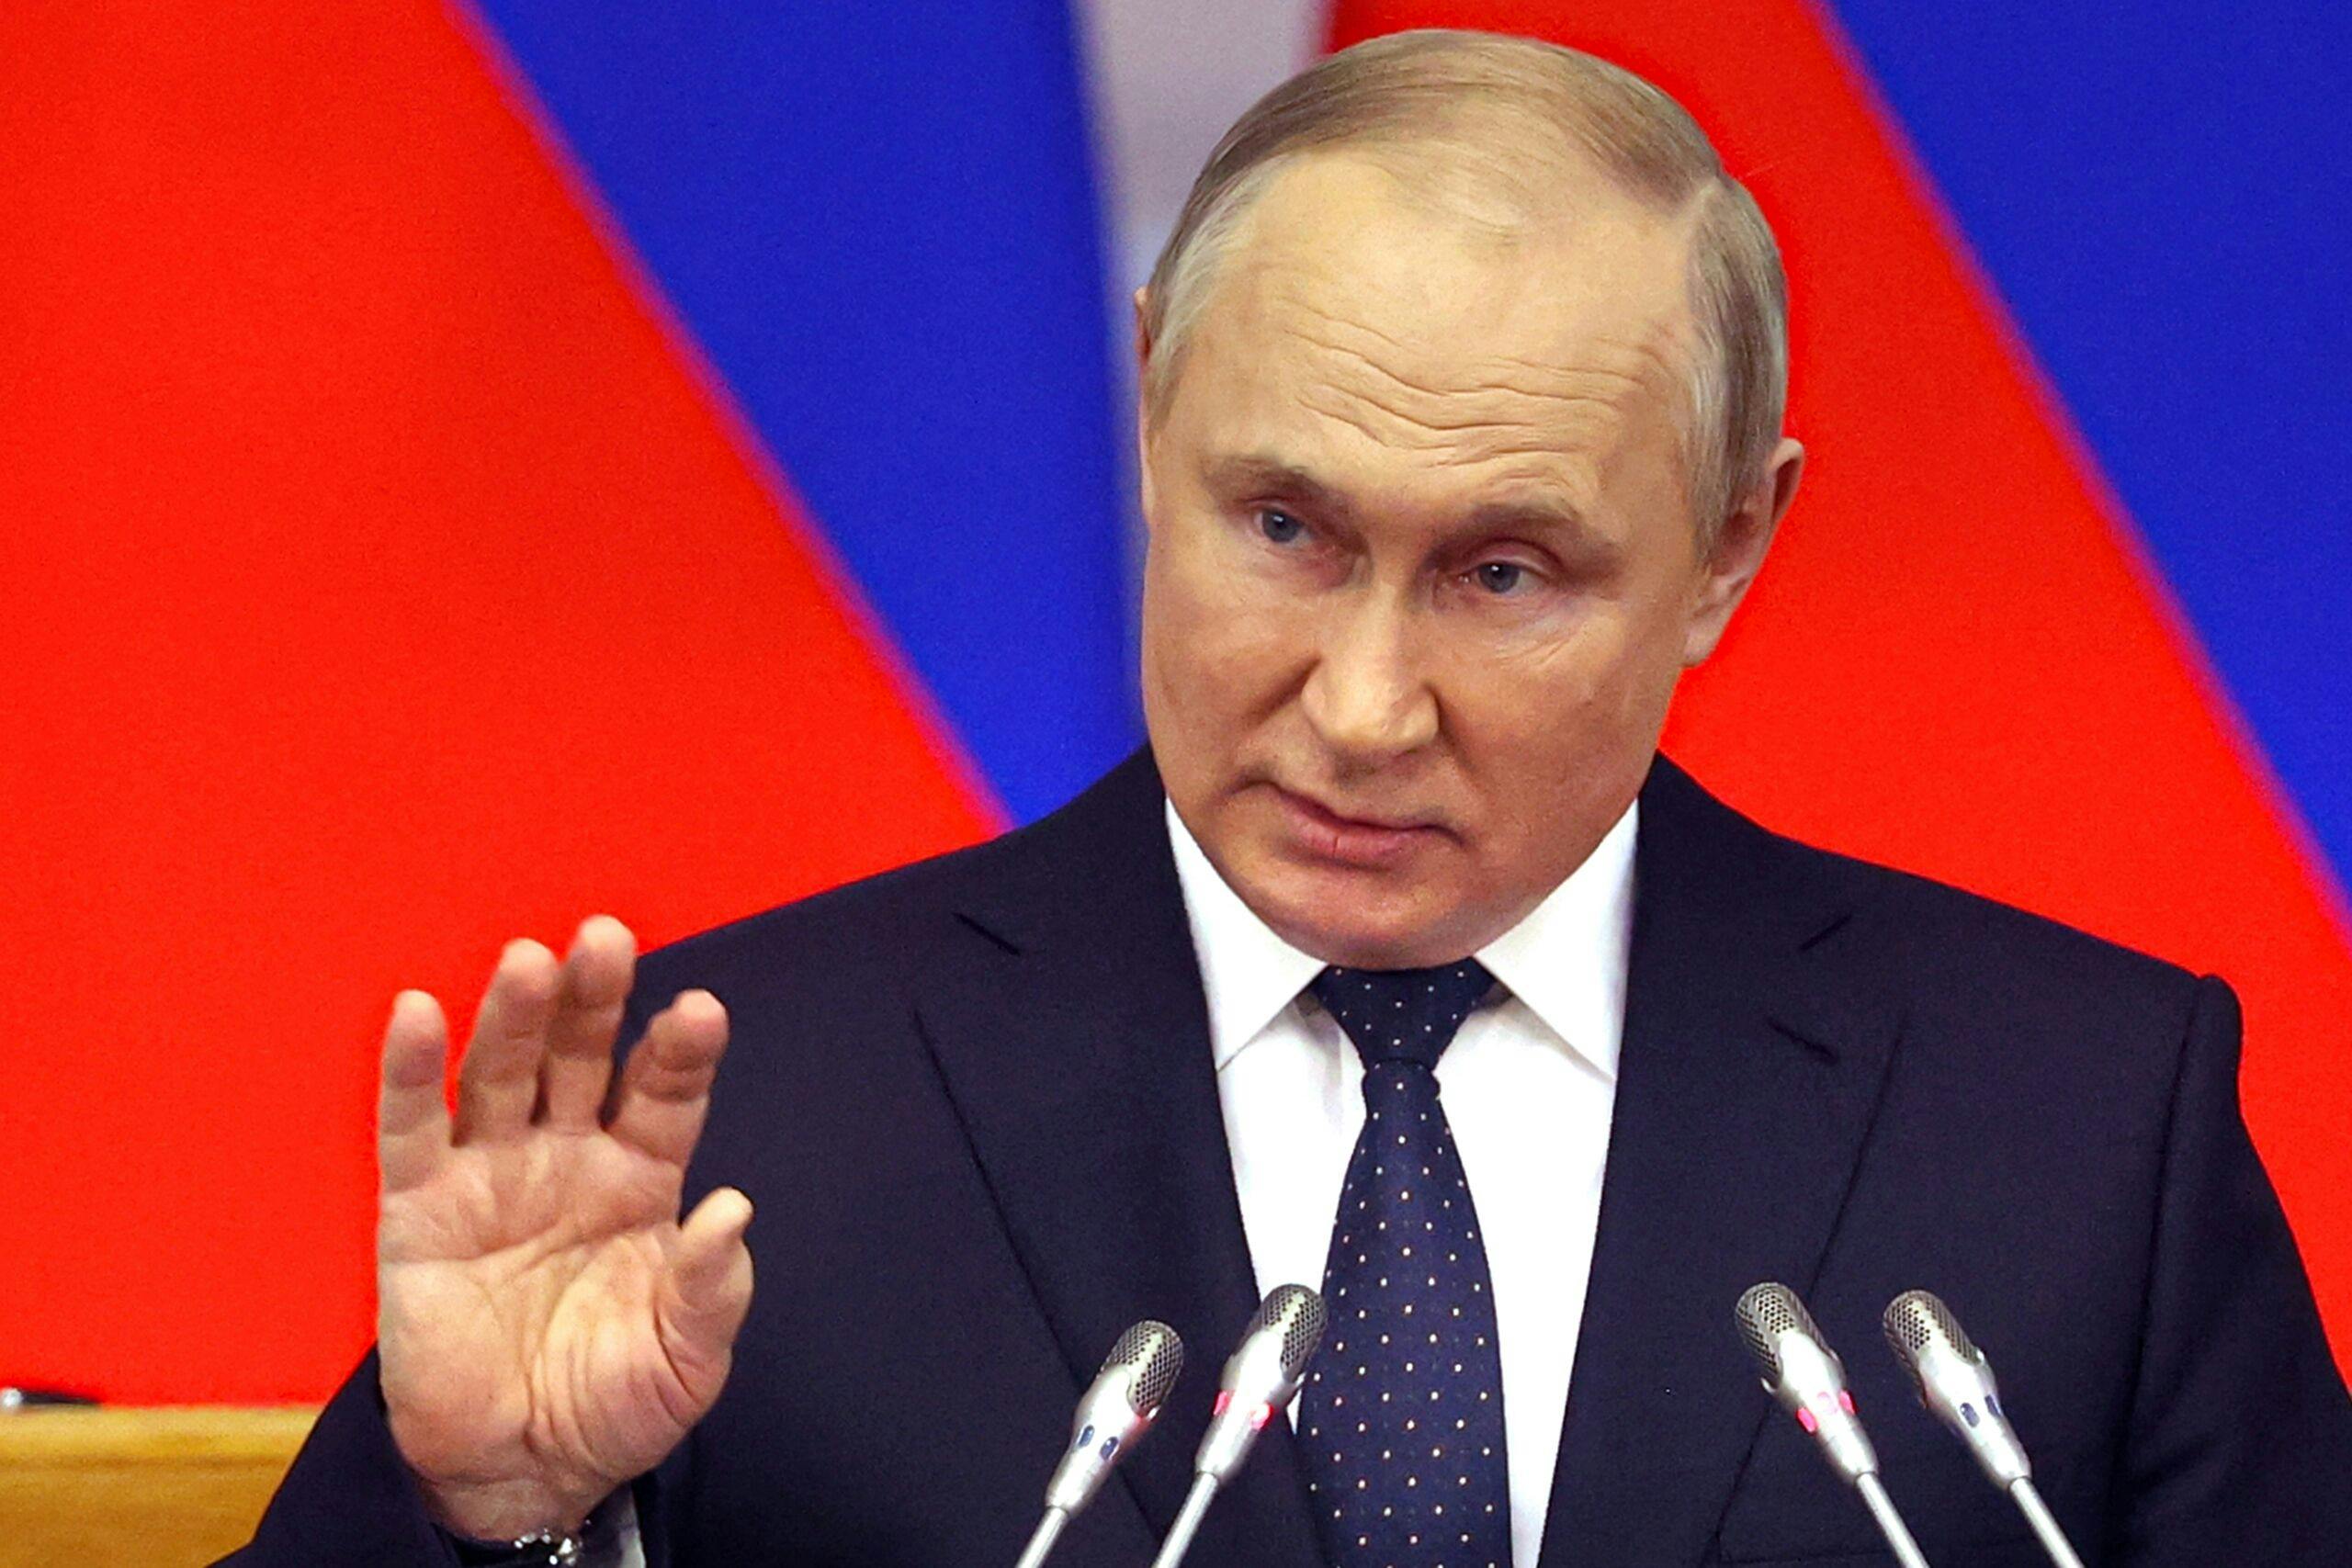 La Russia si allena con armi nucleari false e “promuove intimidazioni”